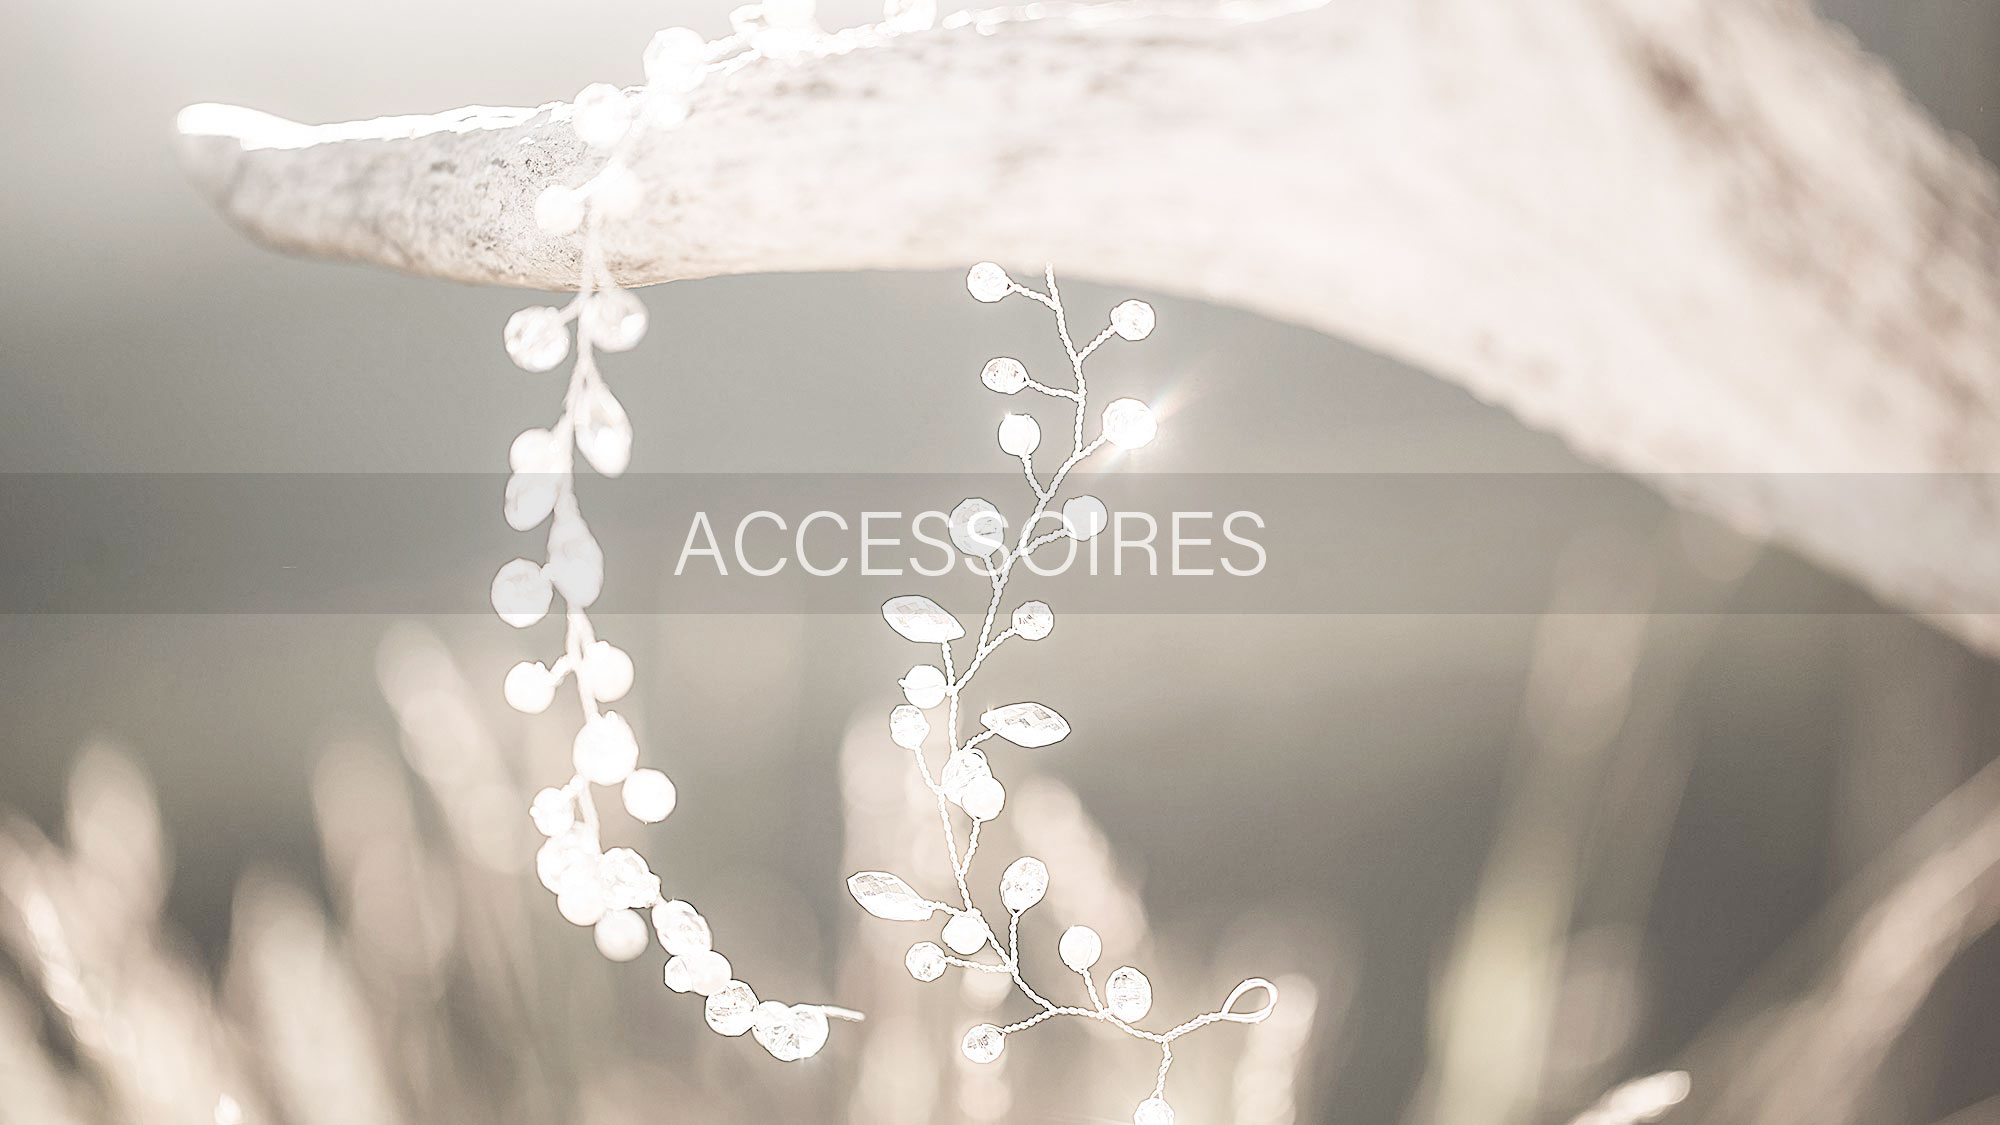 Brautmoden Accessoires für die suchende Braut in Siebnen und Umgebung. Brautschuhe für Ihren Hochzeitstag passend zum Brautkleid. Entdecken Sie die große Vielfalt unserer Brautmoden Accessoires in unserem Geschäft in Siebnen.